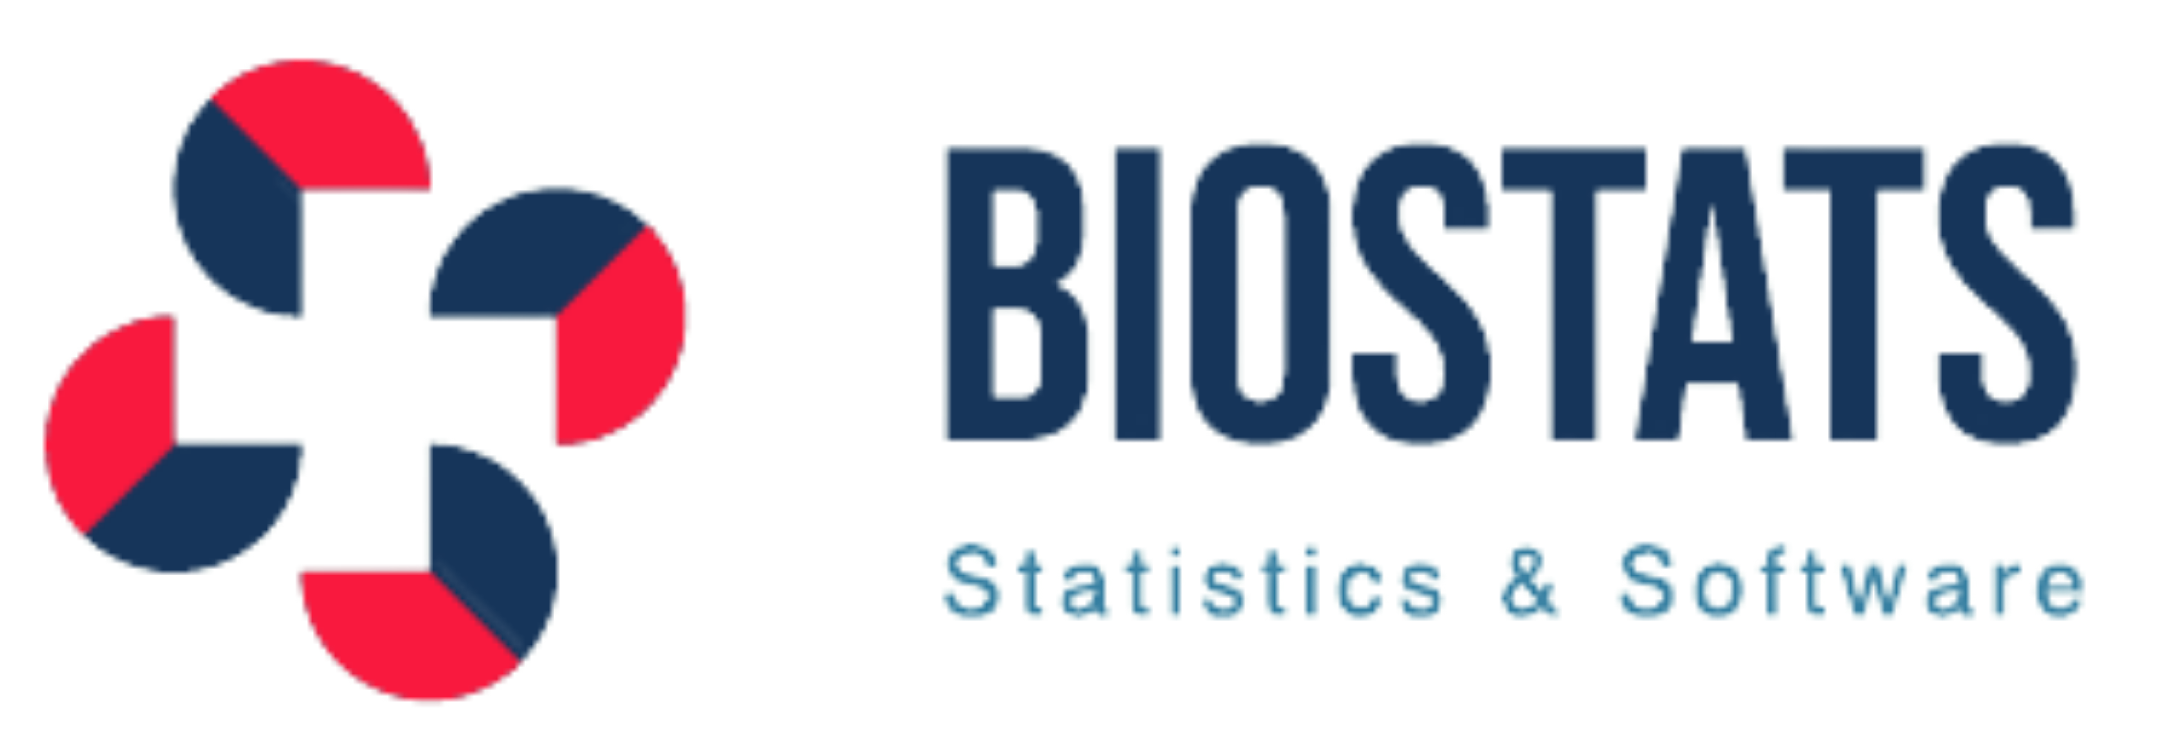 Biostats